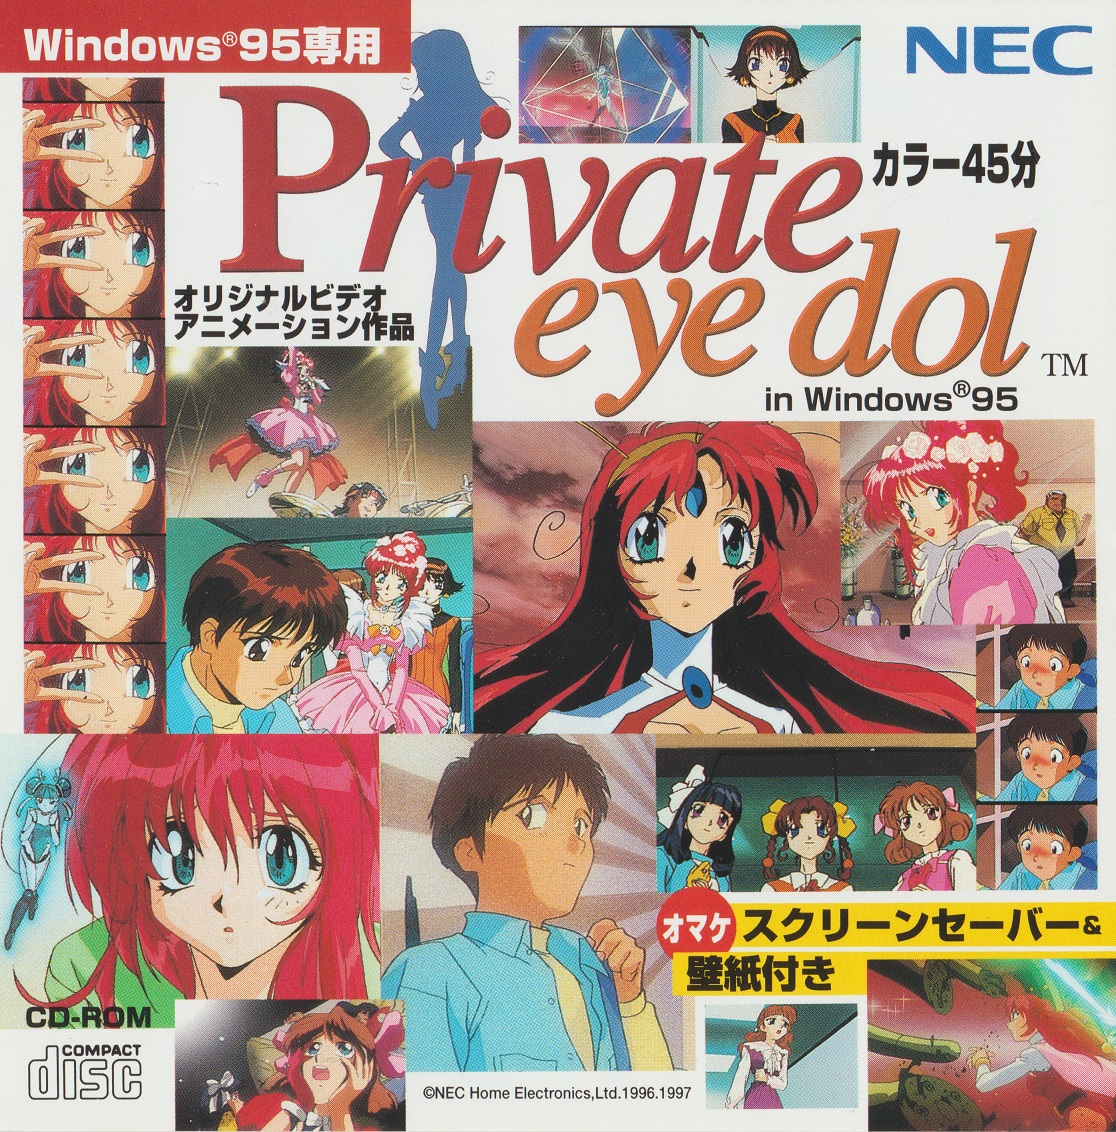 Private Eye Dol in Windows 95 Cover